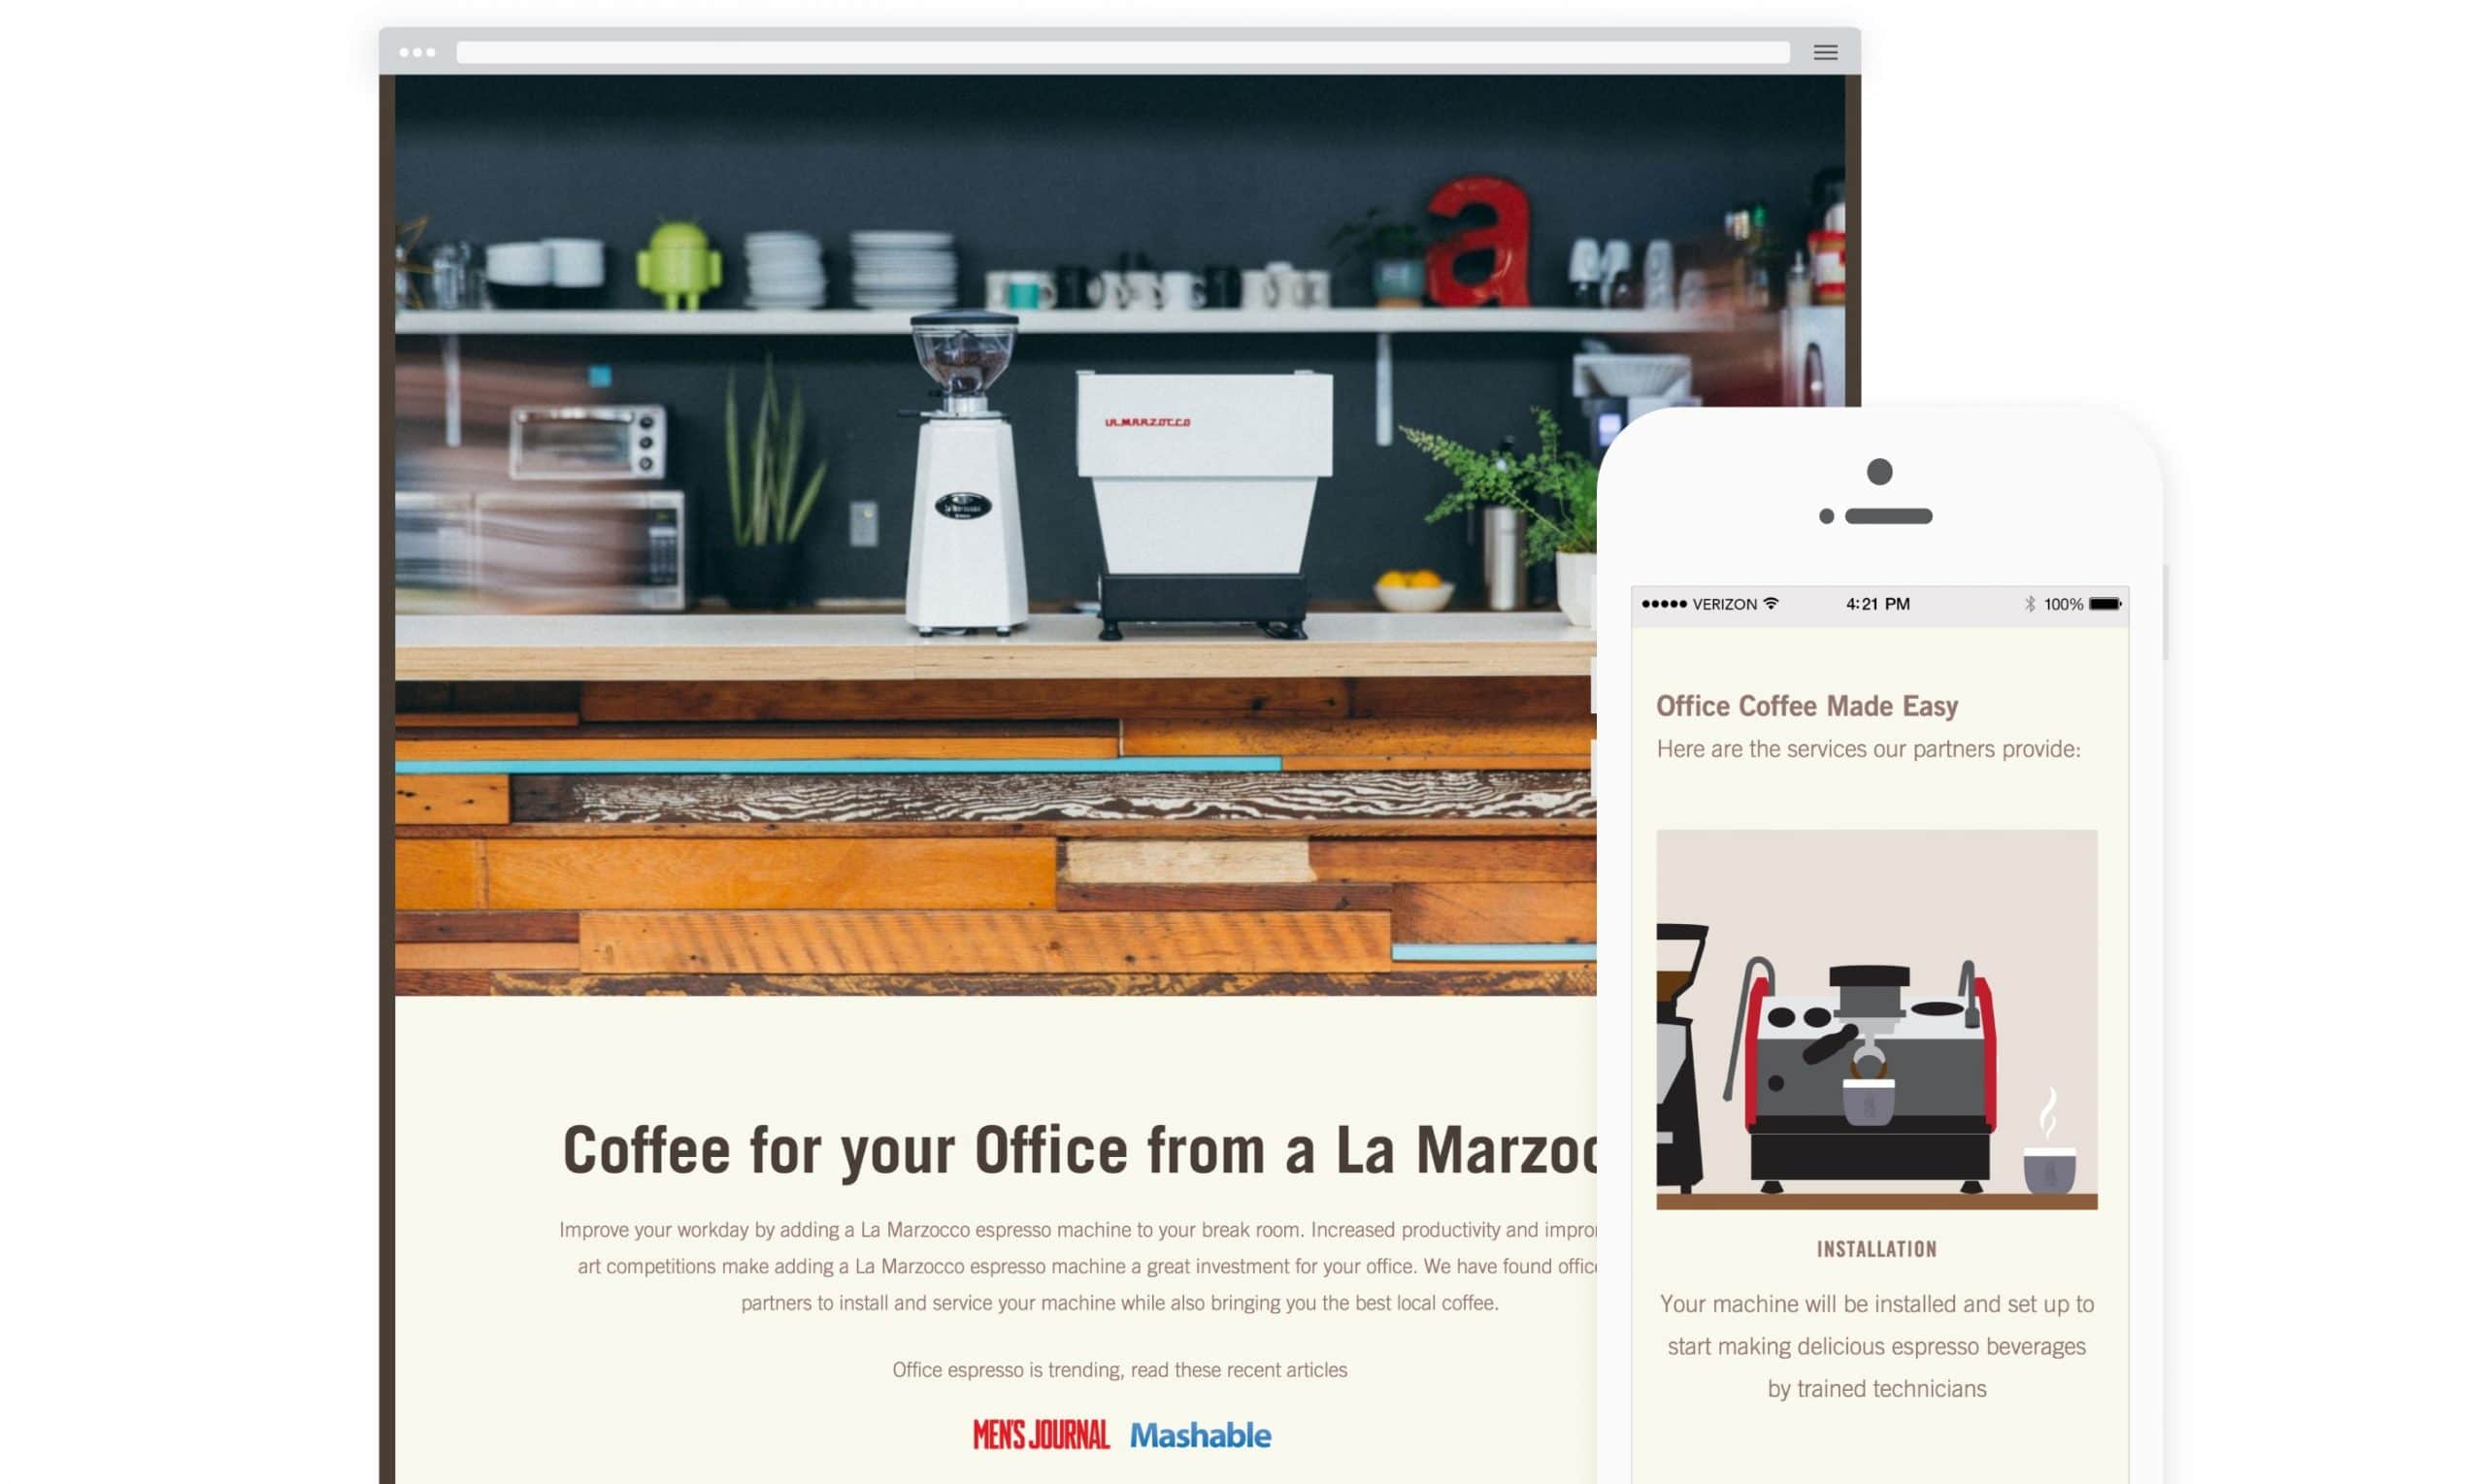 La Marzocco Office Coffee